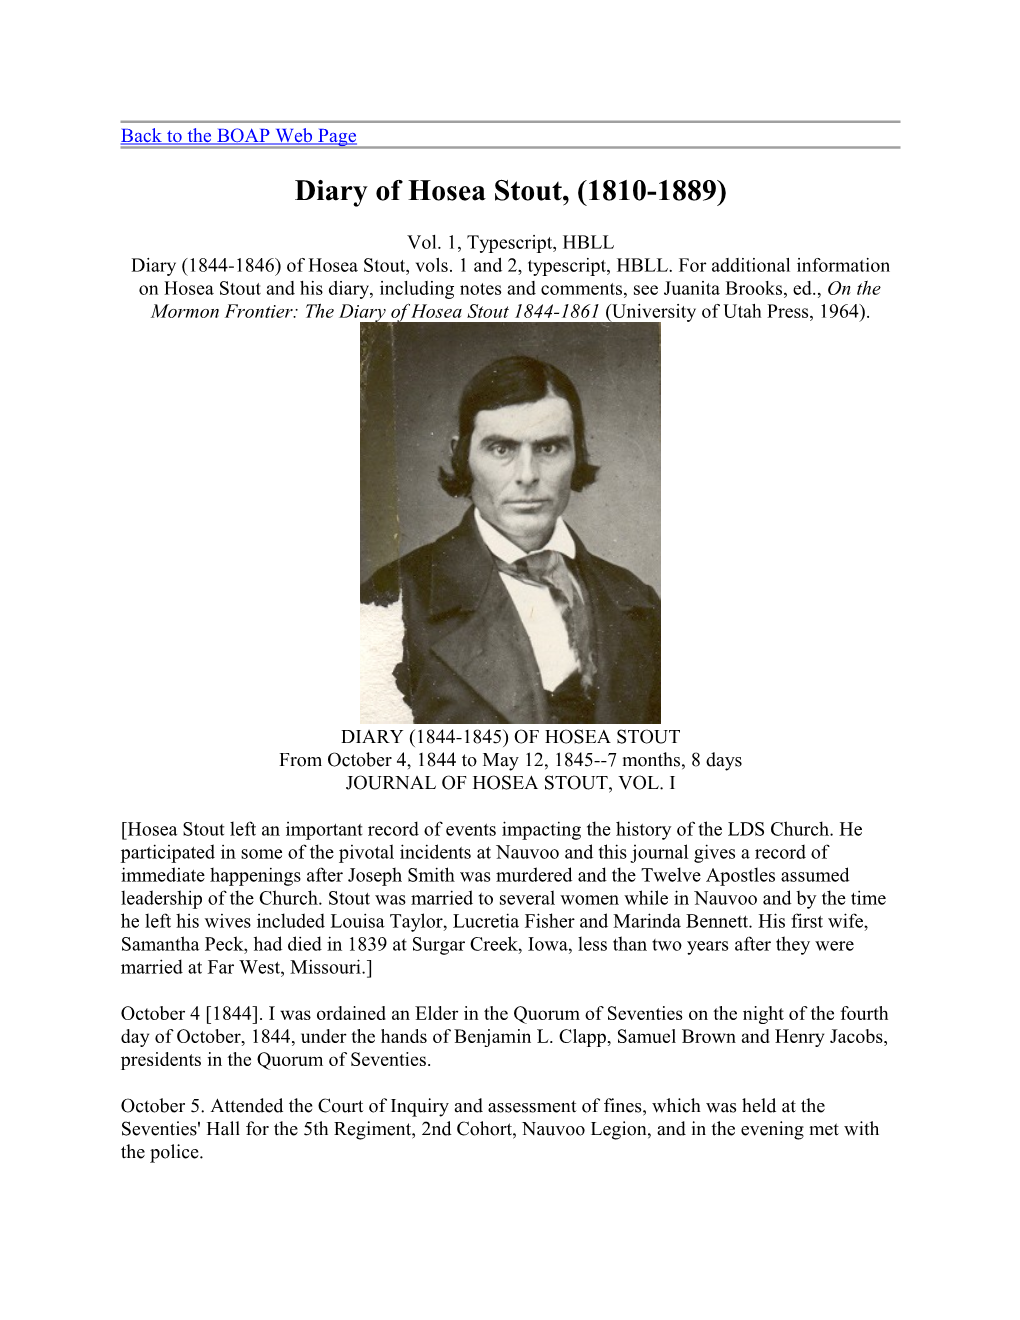 Diary of Hosea Stout (1810-1889)